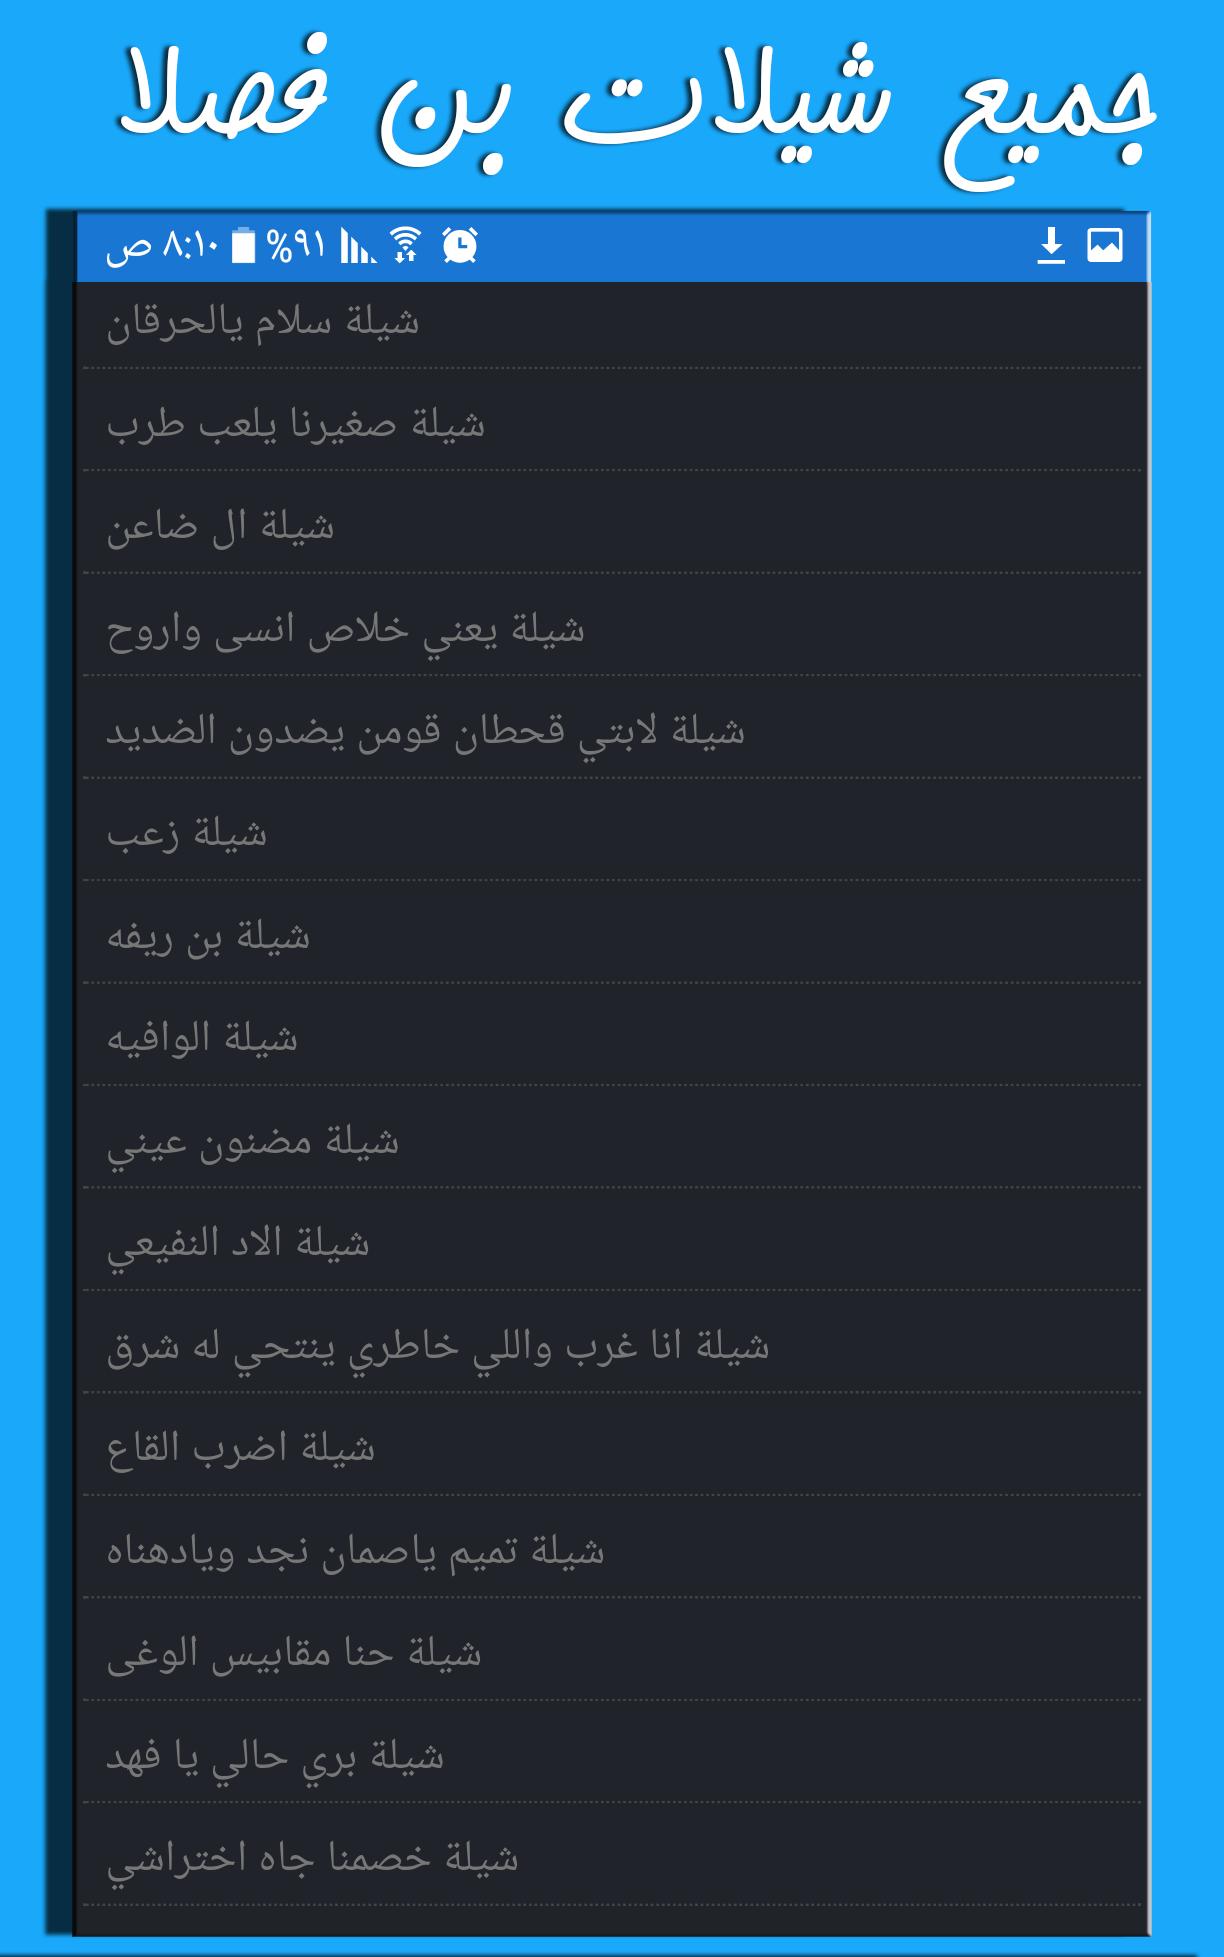 شيلات فهد بن فصلا كاملة for Android - APK Download